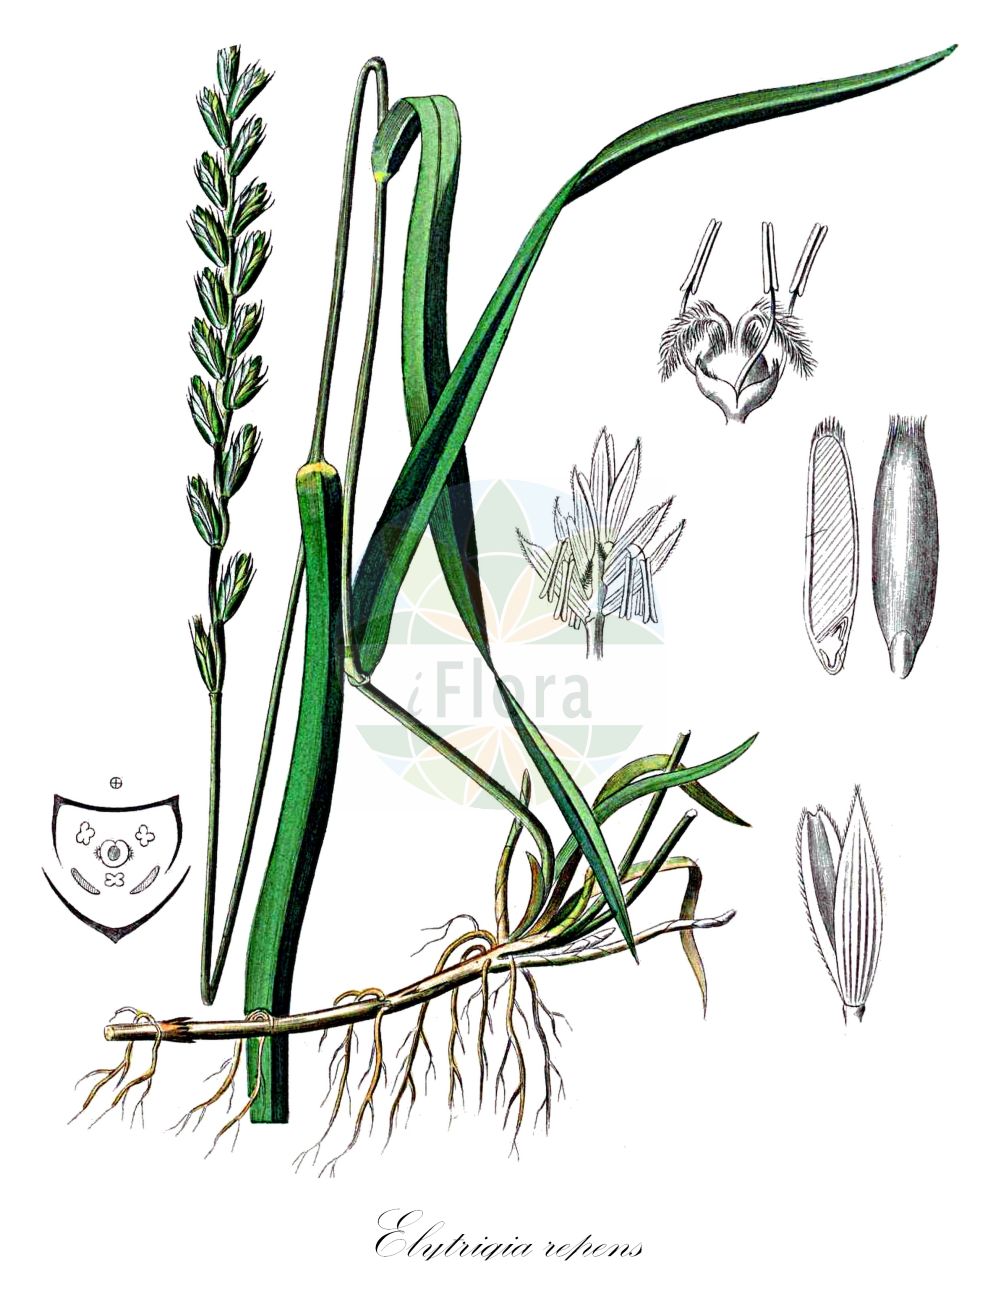 Historische Abbildung von Elytrigia repens (Kriech-Quecke - Common Couch). Das Bild zeigt Blatt, Bluete, Frucht und Same. ---- Historical Drawing of Elytrigia repens (Kriech-Quecke - Common Couch). The image is showing leaf, flower, fruit and seed.(Elytrigia repens,Kriech-Quecke,Common Couch,Agropyron caesium,Agropyron caldesii,Agropyron maroccanum,Agropyron repens,Elymus caesius,Elymus repens,Elytrigia repens,Triticum littoreum,Triticum repens,Kriech-Quecke,Gewoehnliche Quecke i. e. S.,Strand-Kriech-Quecke,Common Couch,Couch Grass,Tick Quackgrass,Common Couchgrass,Creeping Wheat Grass,Dog's Grass,Quackgrass,Quickgrass,Quitchgrass,Twitch,Twitchgrass,Elytrigia,Poaceae,Süßgräser,Grass family,Blatt,Bluete,Frucht,Same,leaf,flower,fruit,seed,Kohl (1891-1895))